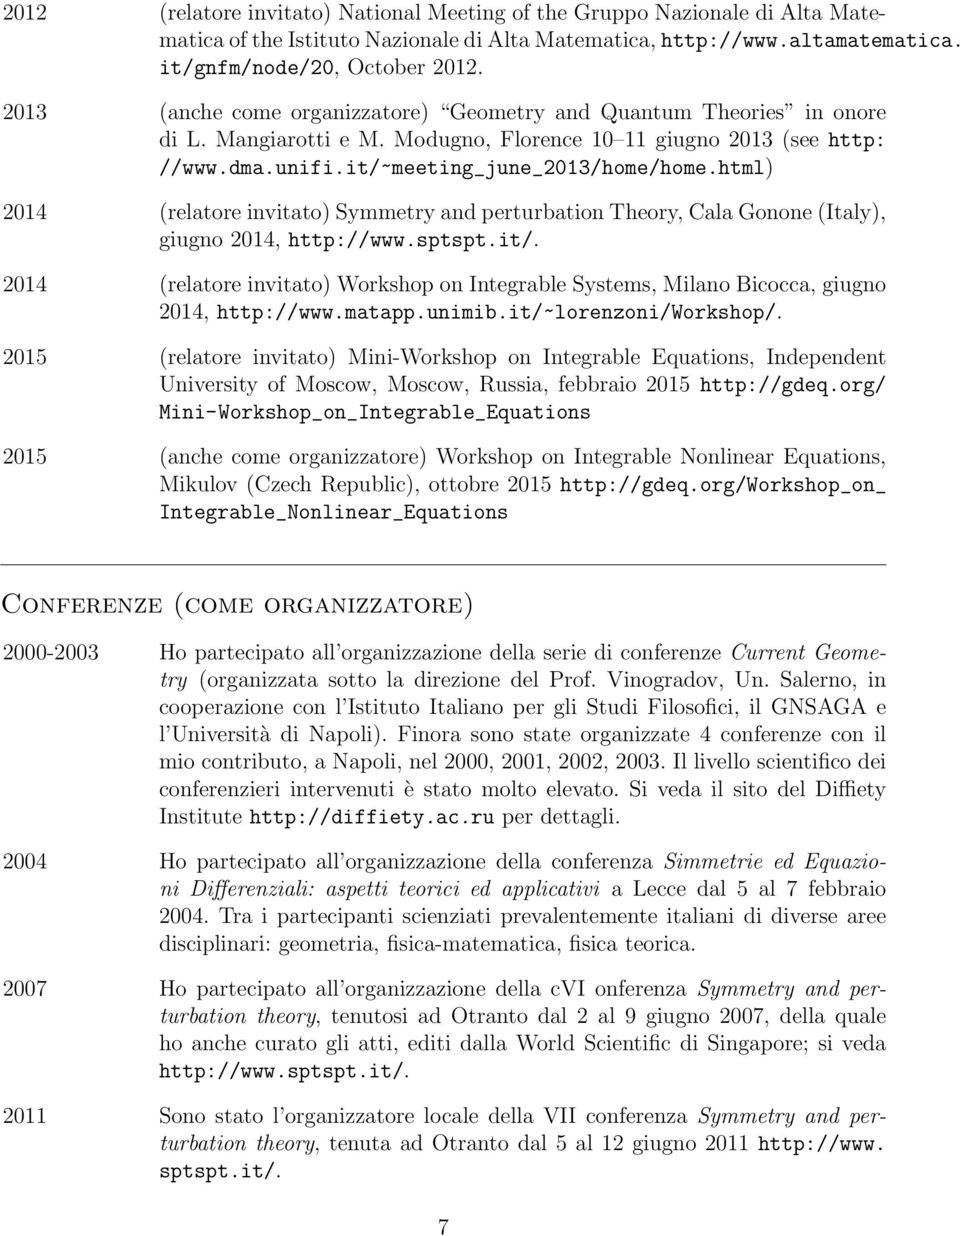 html) 2014 (relatore invitato) Symmetry and perturbation Theory, Cala Gonone(Italy), giugno 2014, http://www.sptspt.it/.